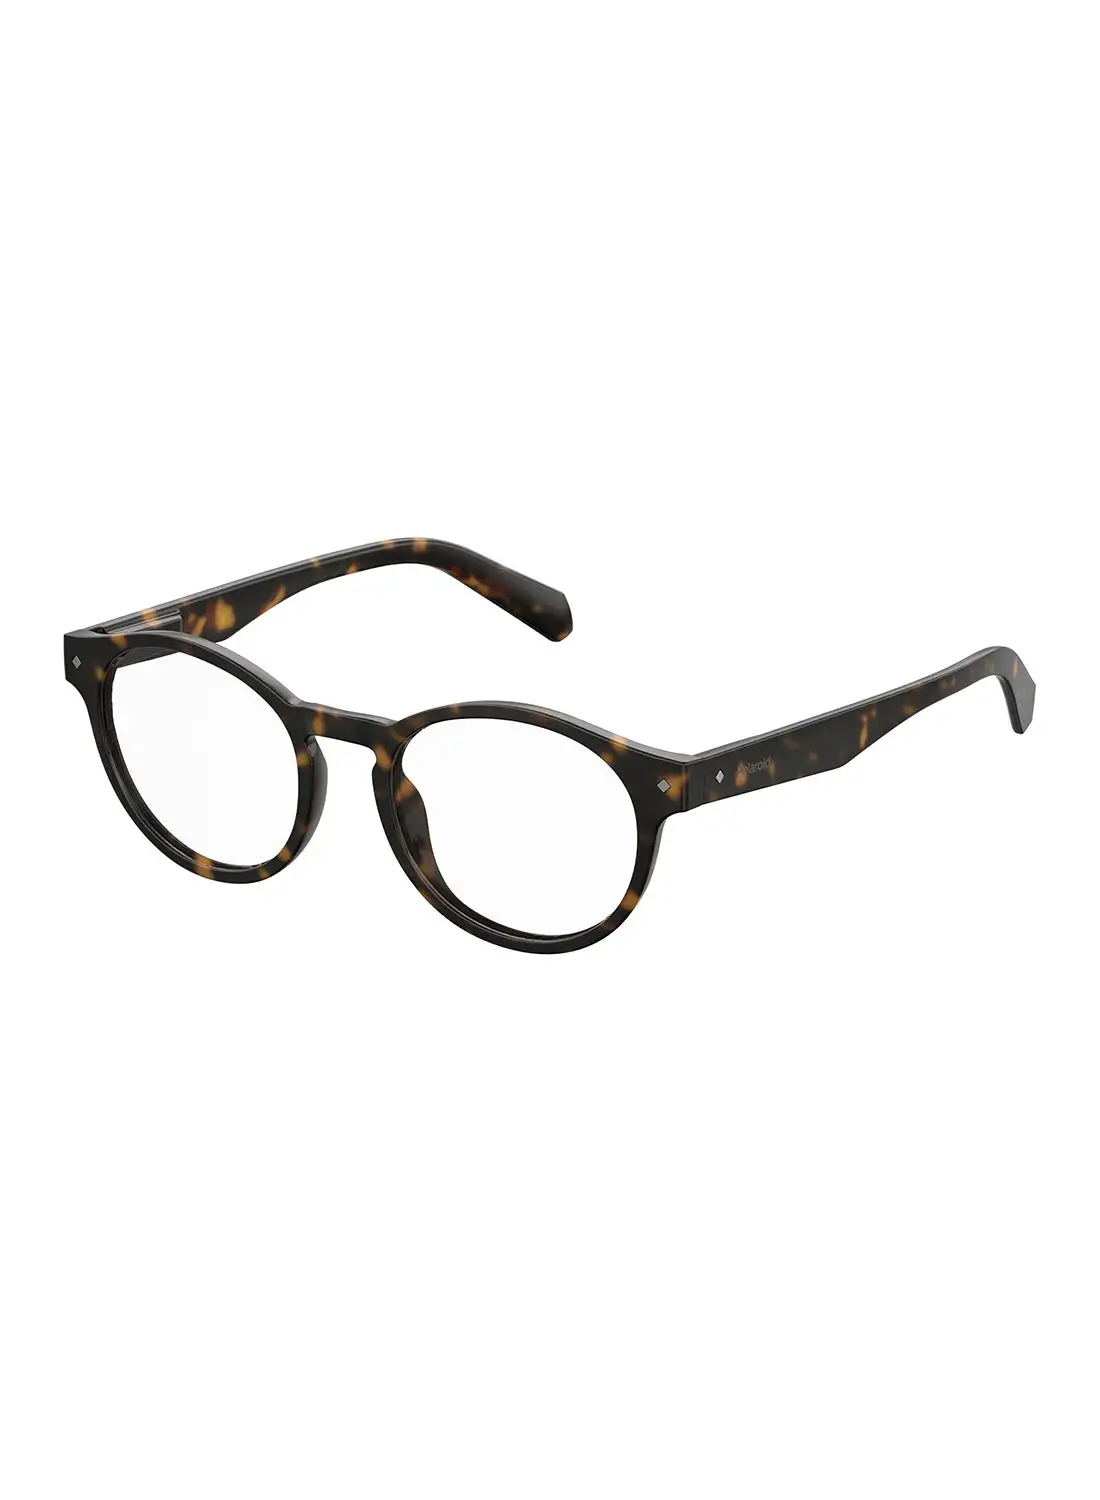 Polaroid Unisex Oval Reading Glasses - Pld 0021/R Havana 49 - Lens Size: 49 Mm